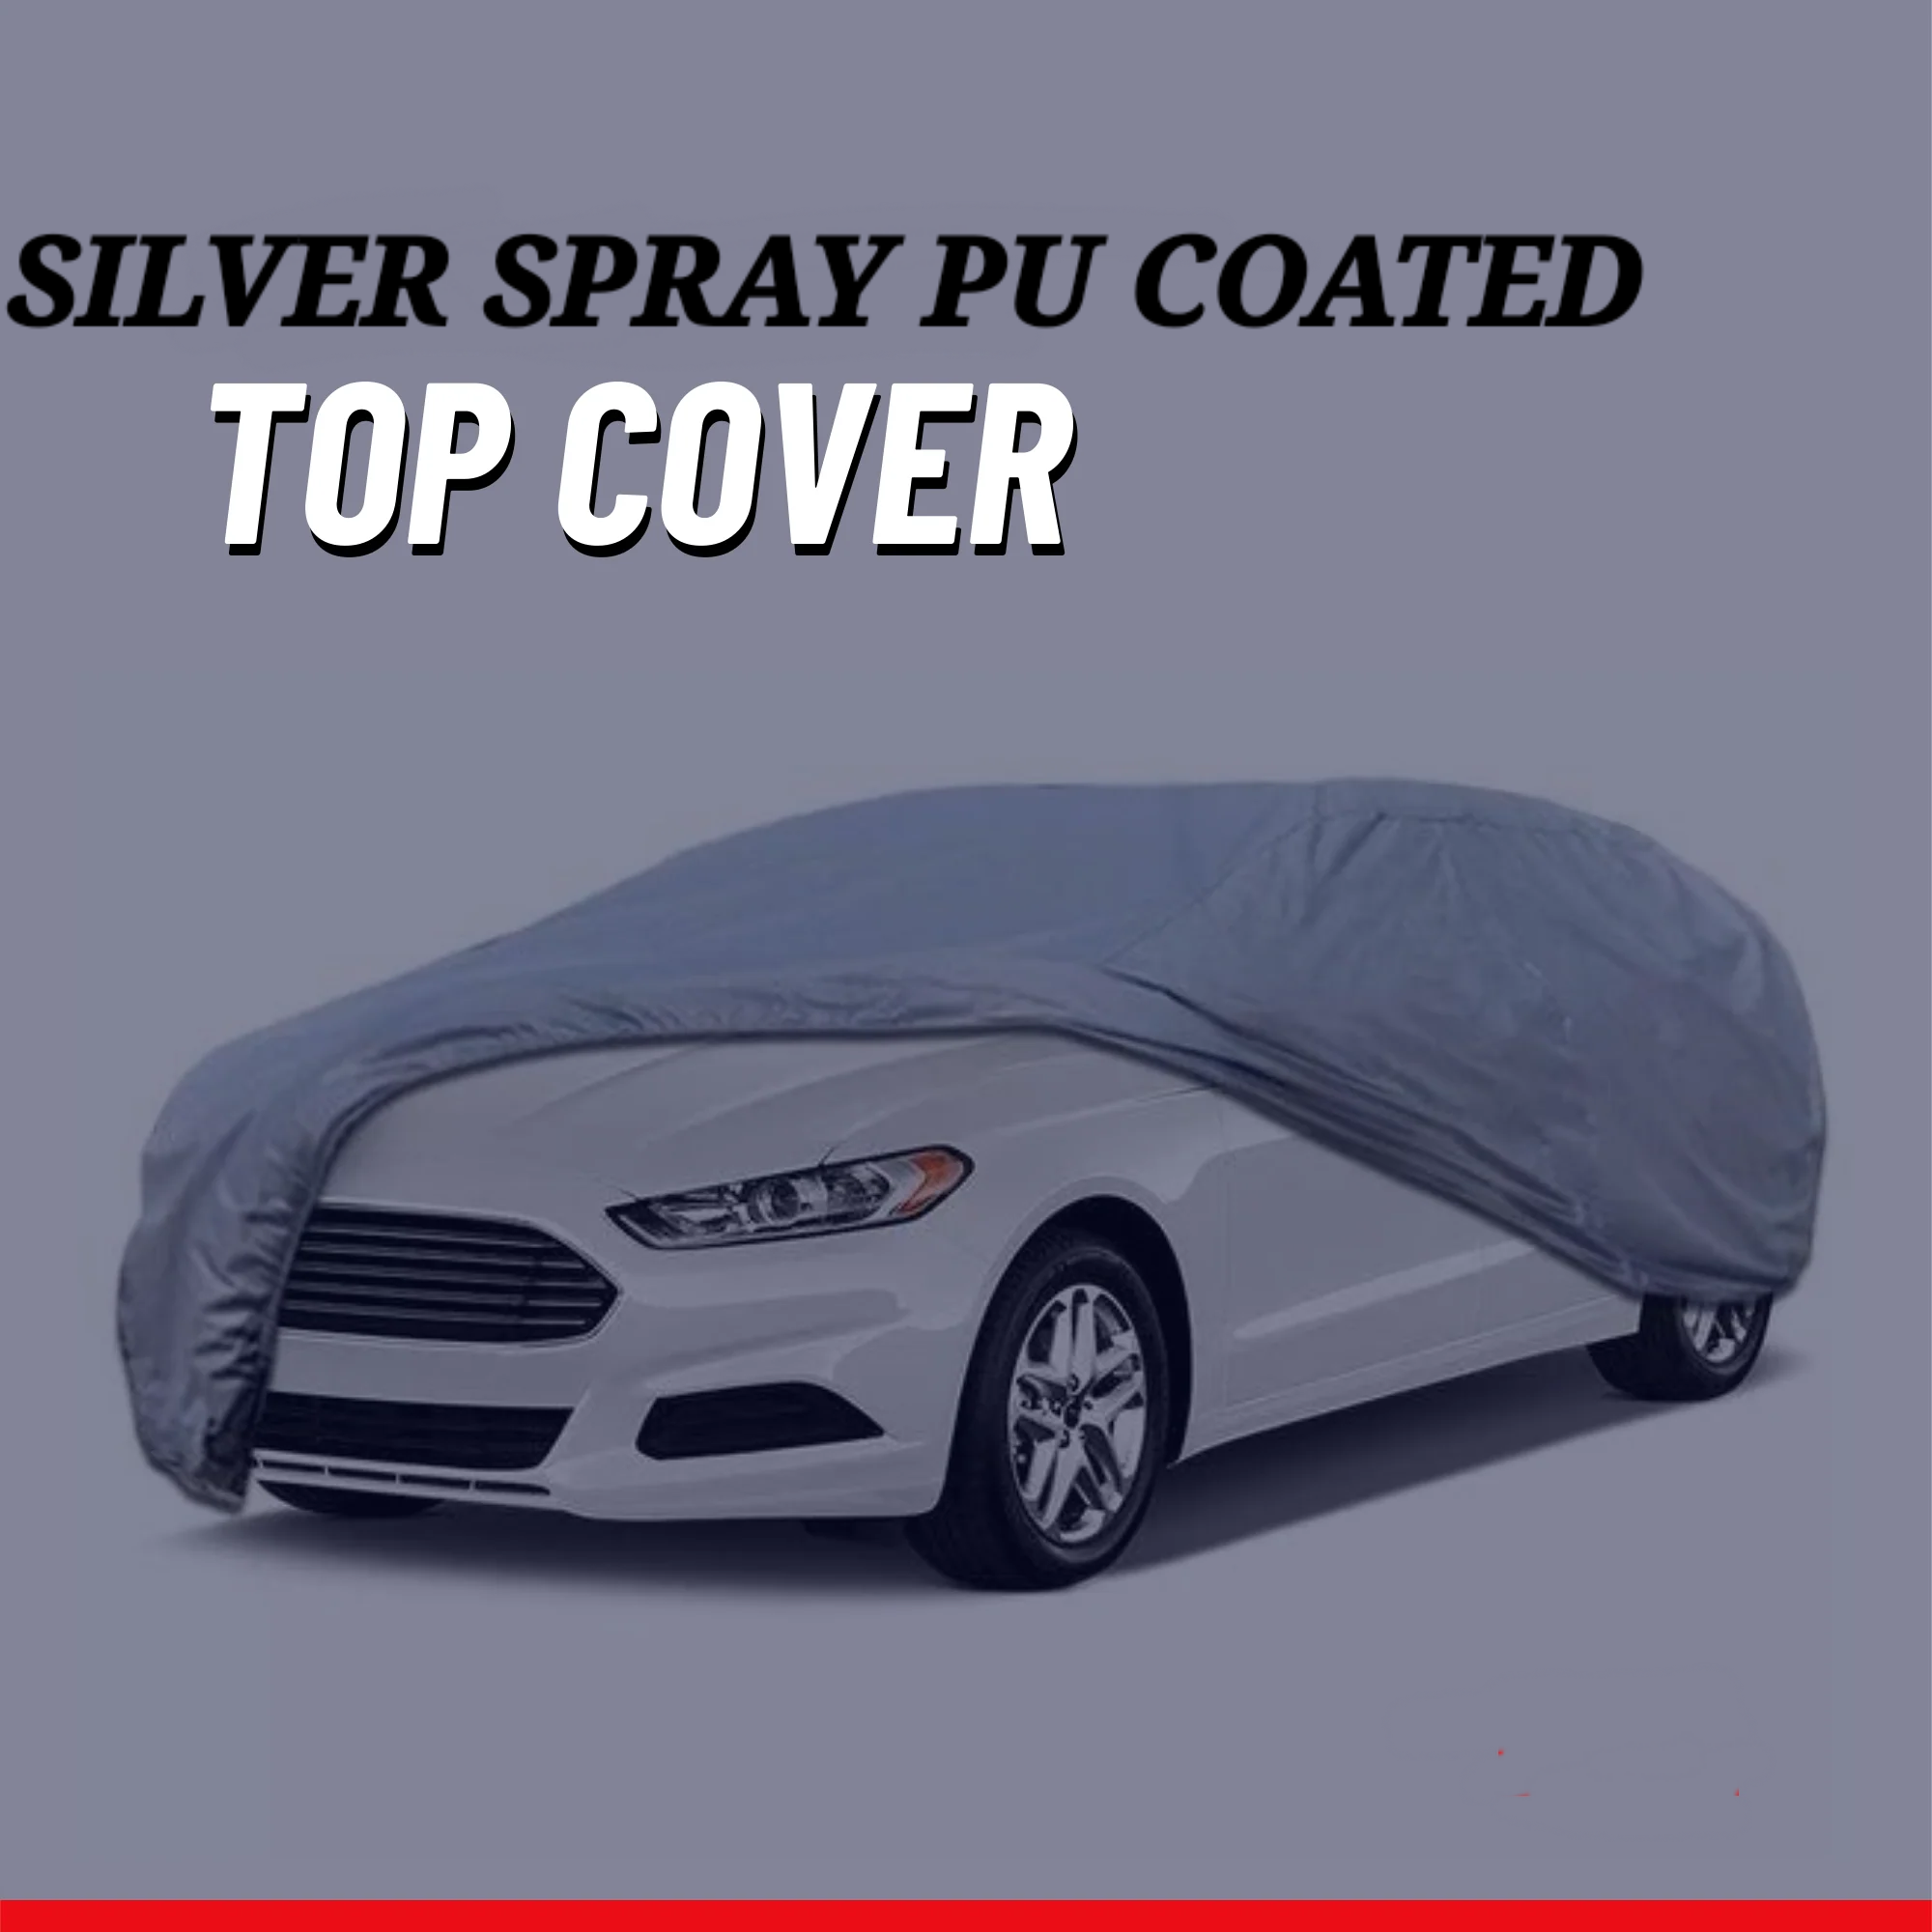 Kia Sportage 2019-2023 Car Top Cover - Waterproof & Dustproof Silver Spray Coated + Free Bag